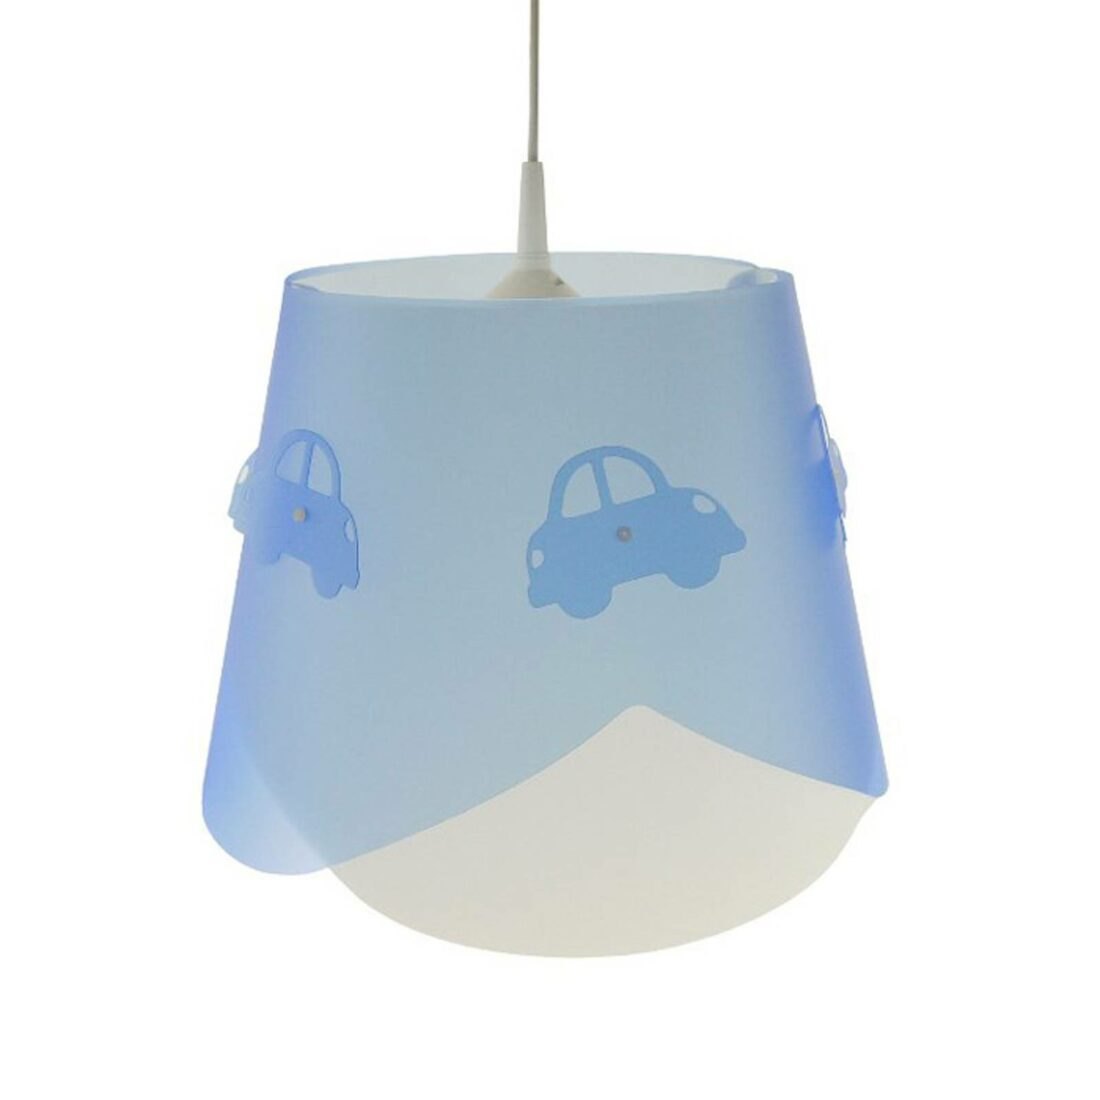 Modré závěsné světlo Piet s motivem auta